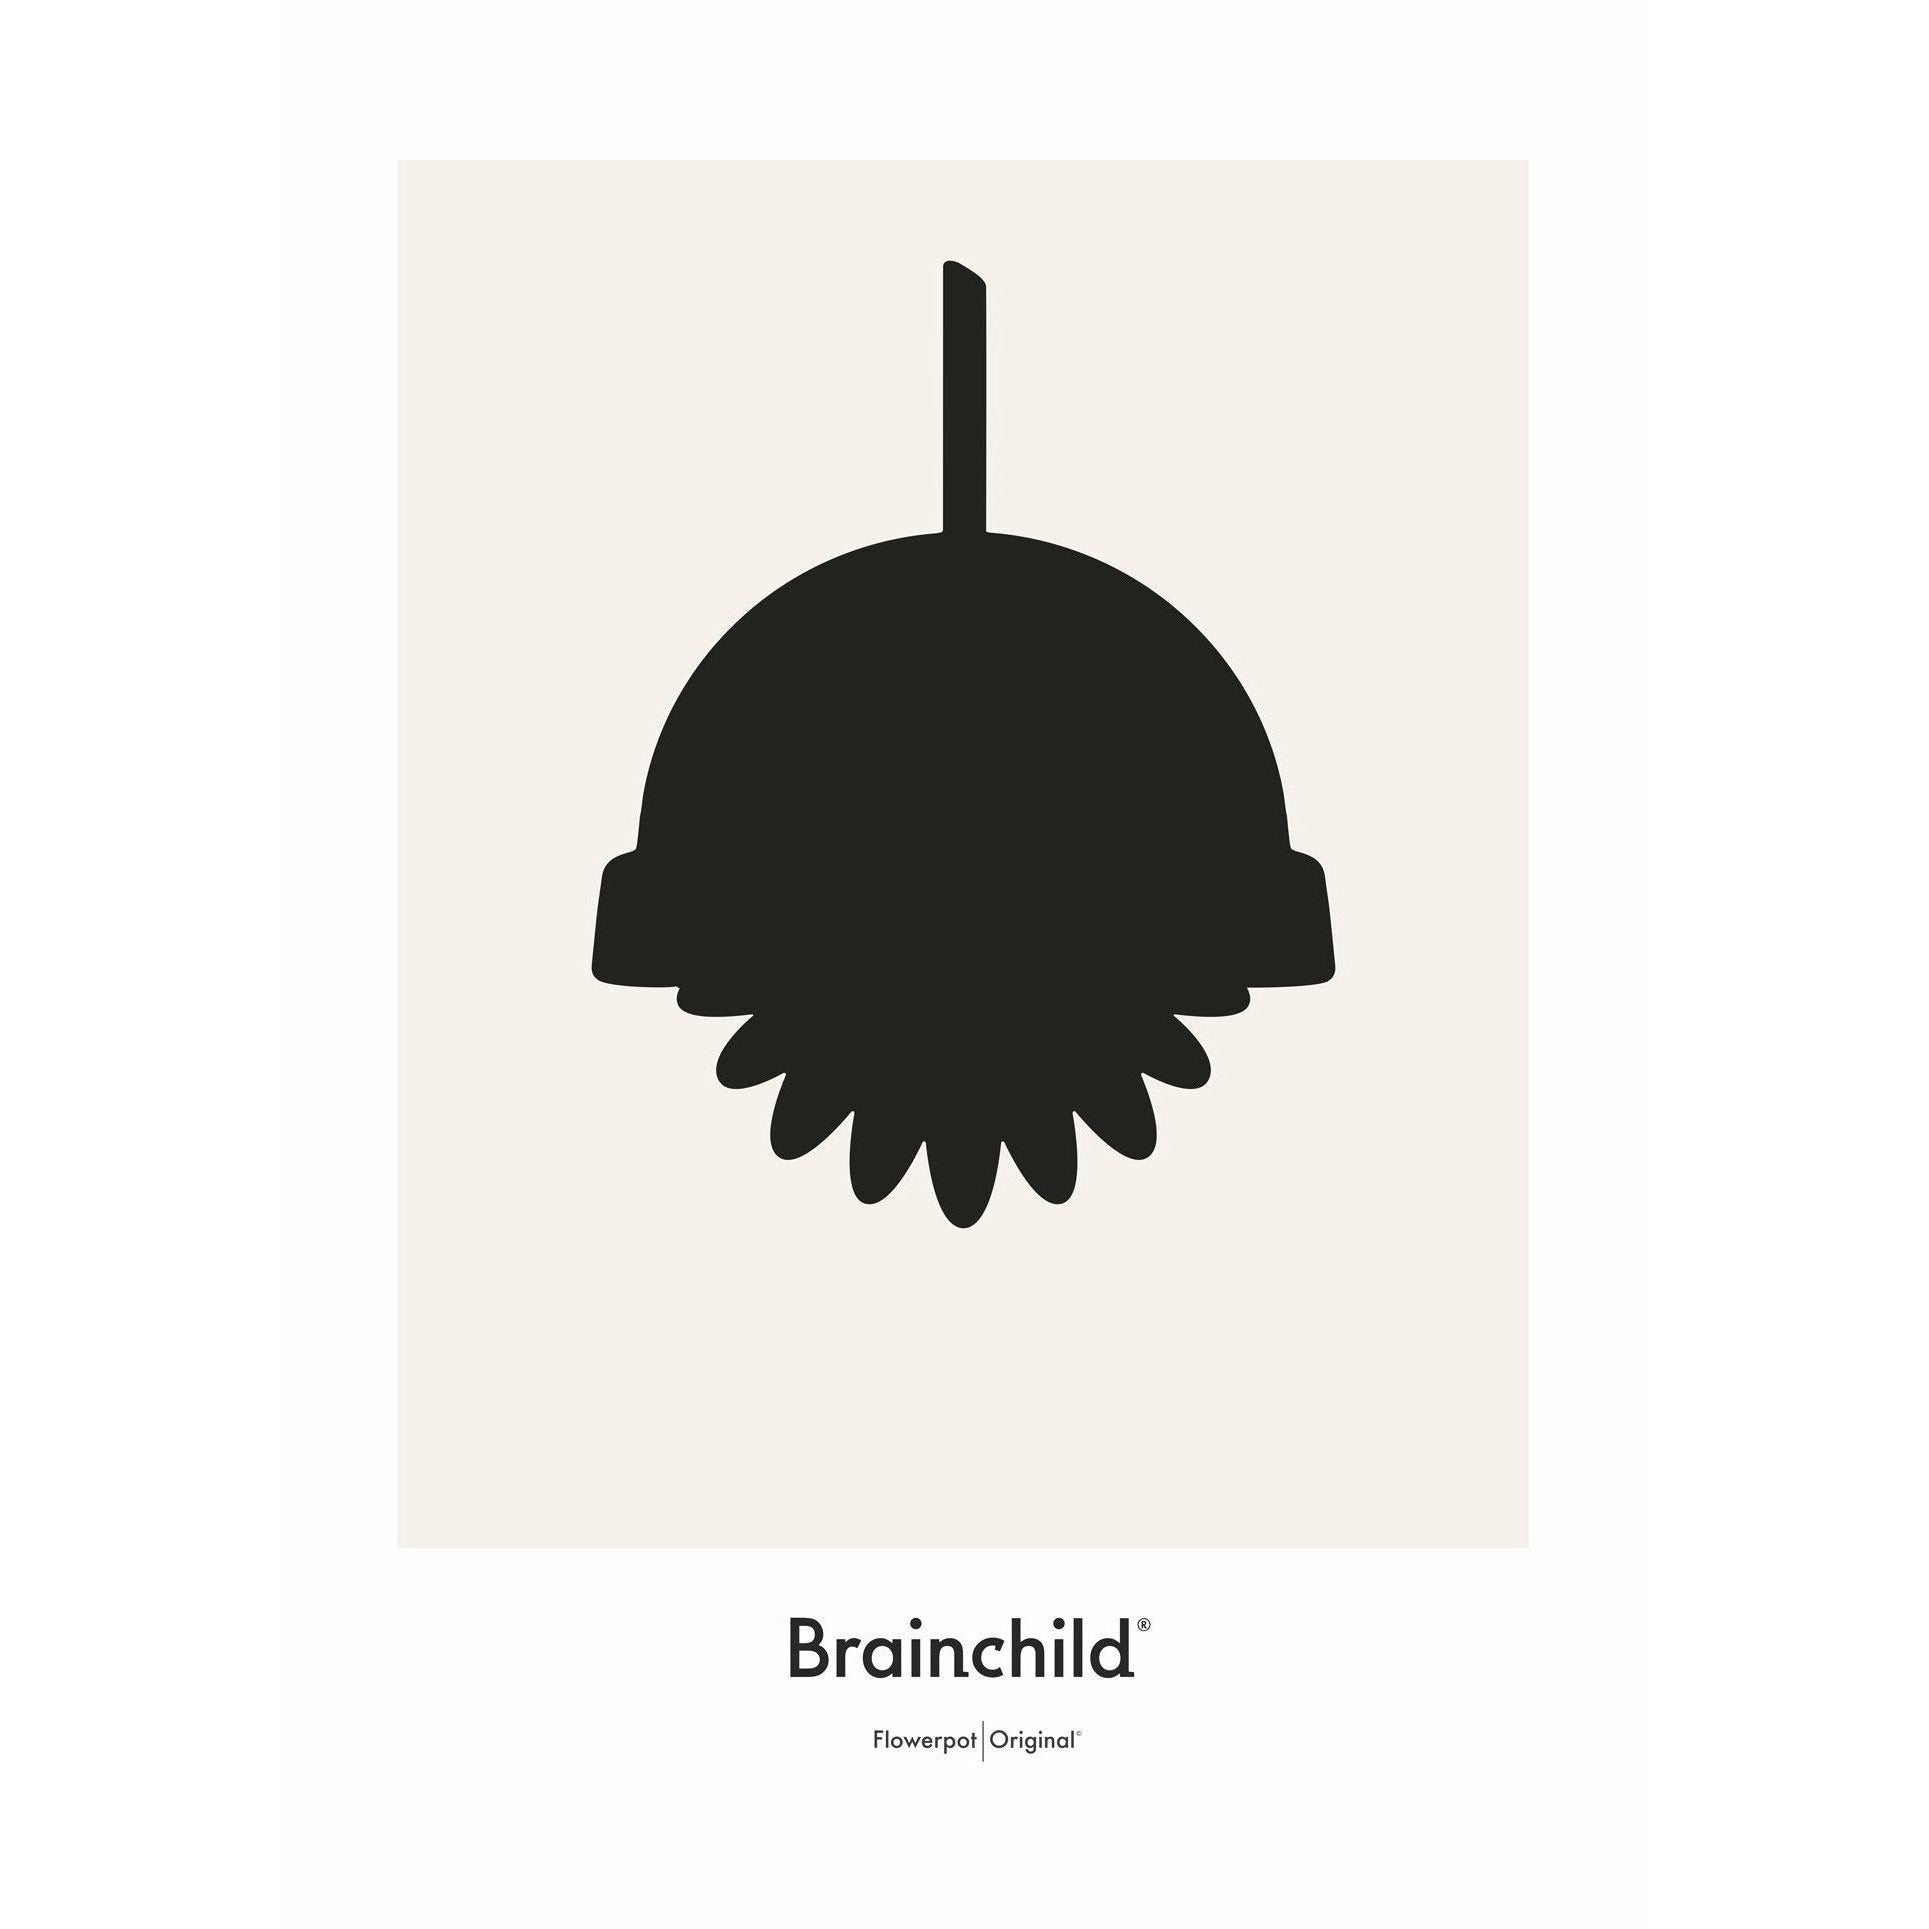 Brainchild Blumentopf Design Icon Poster ohne Rahmen A5, Grau